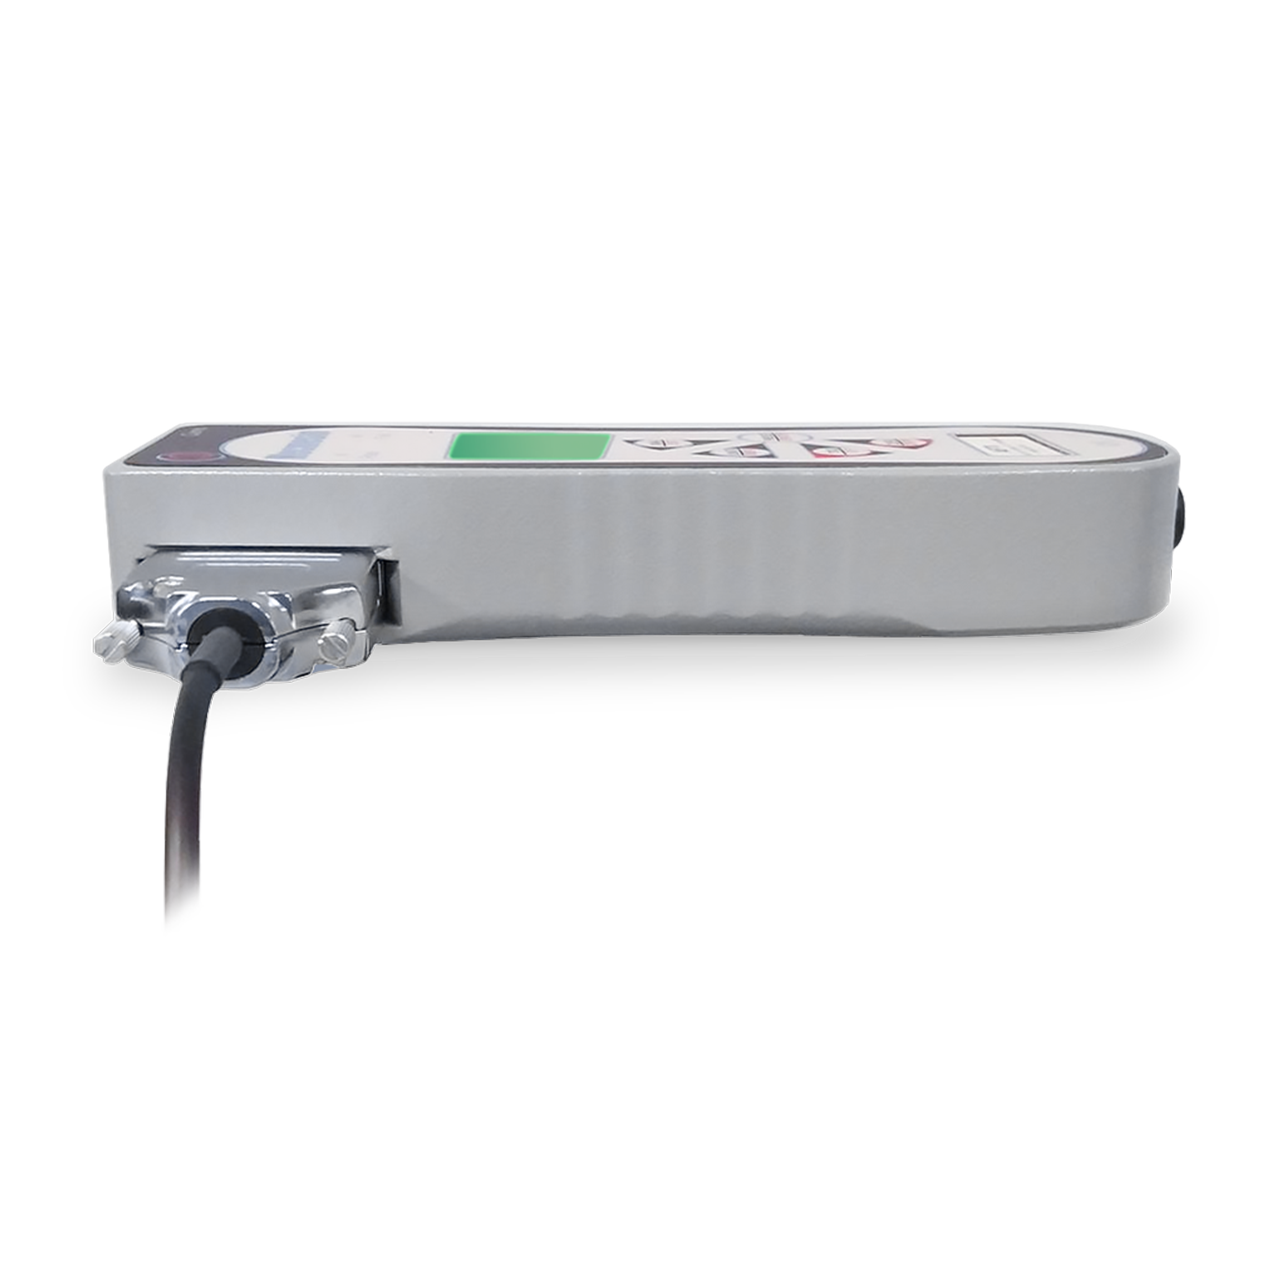 AFTI-Anzeigegerät auf der Seite gelegt mit Schnittstelle zum Anschluss des Sensors